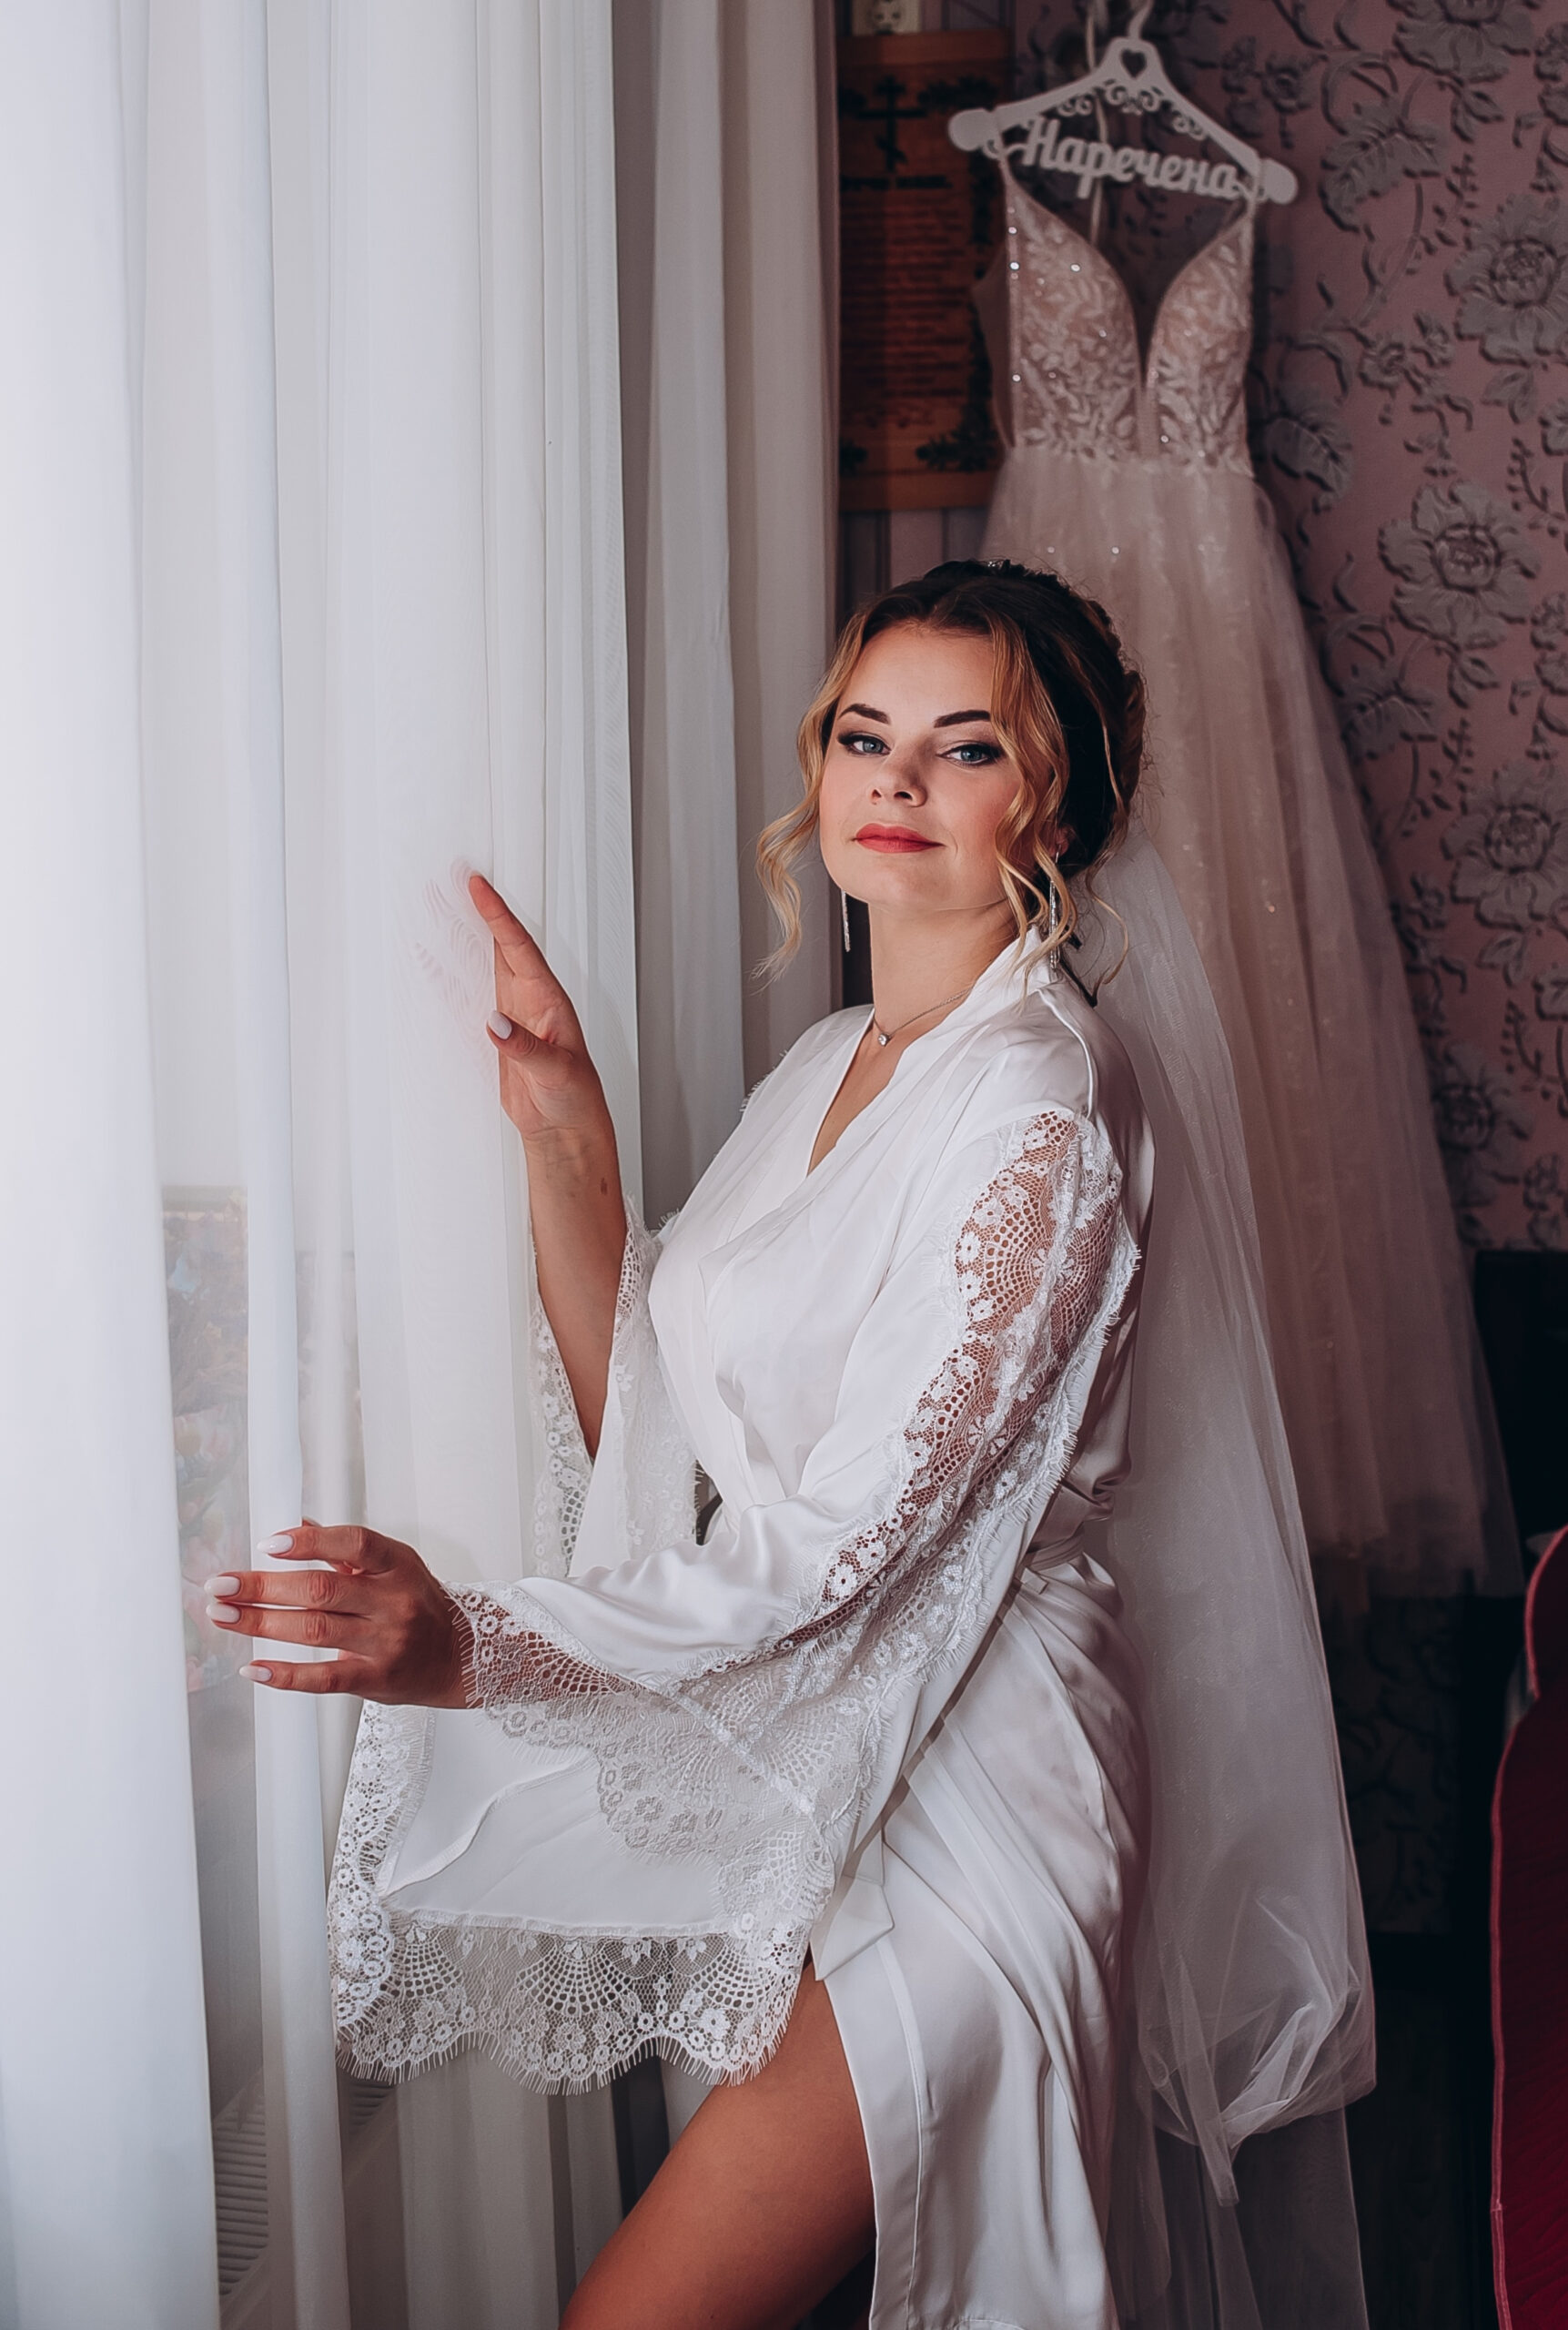 Свадебный фотограф киев